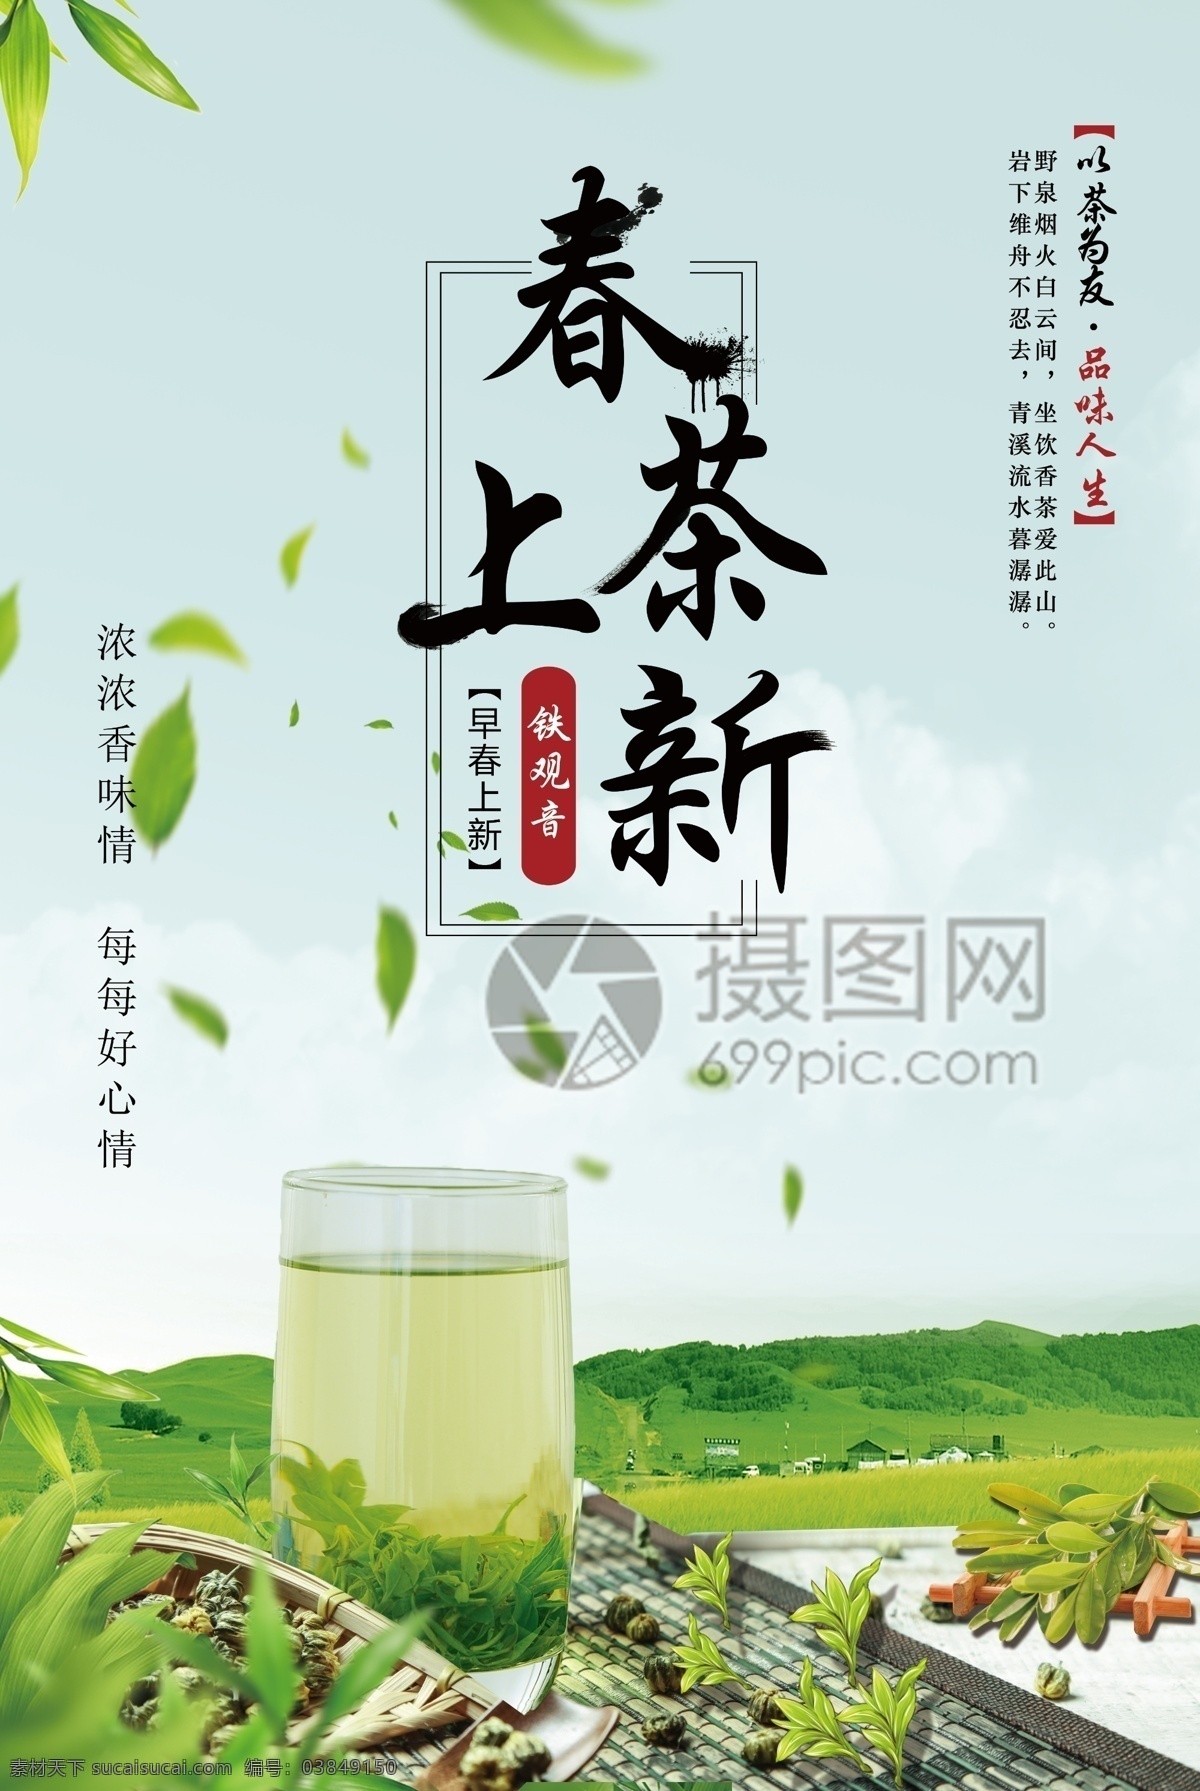 春茶 上 新 宣传海报 春茶上新 宣传 海报 简约 茶 采茶 茶叶 茶文化 饮品